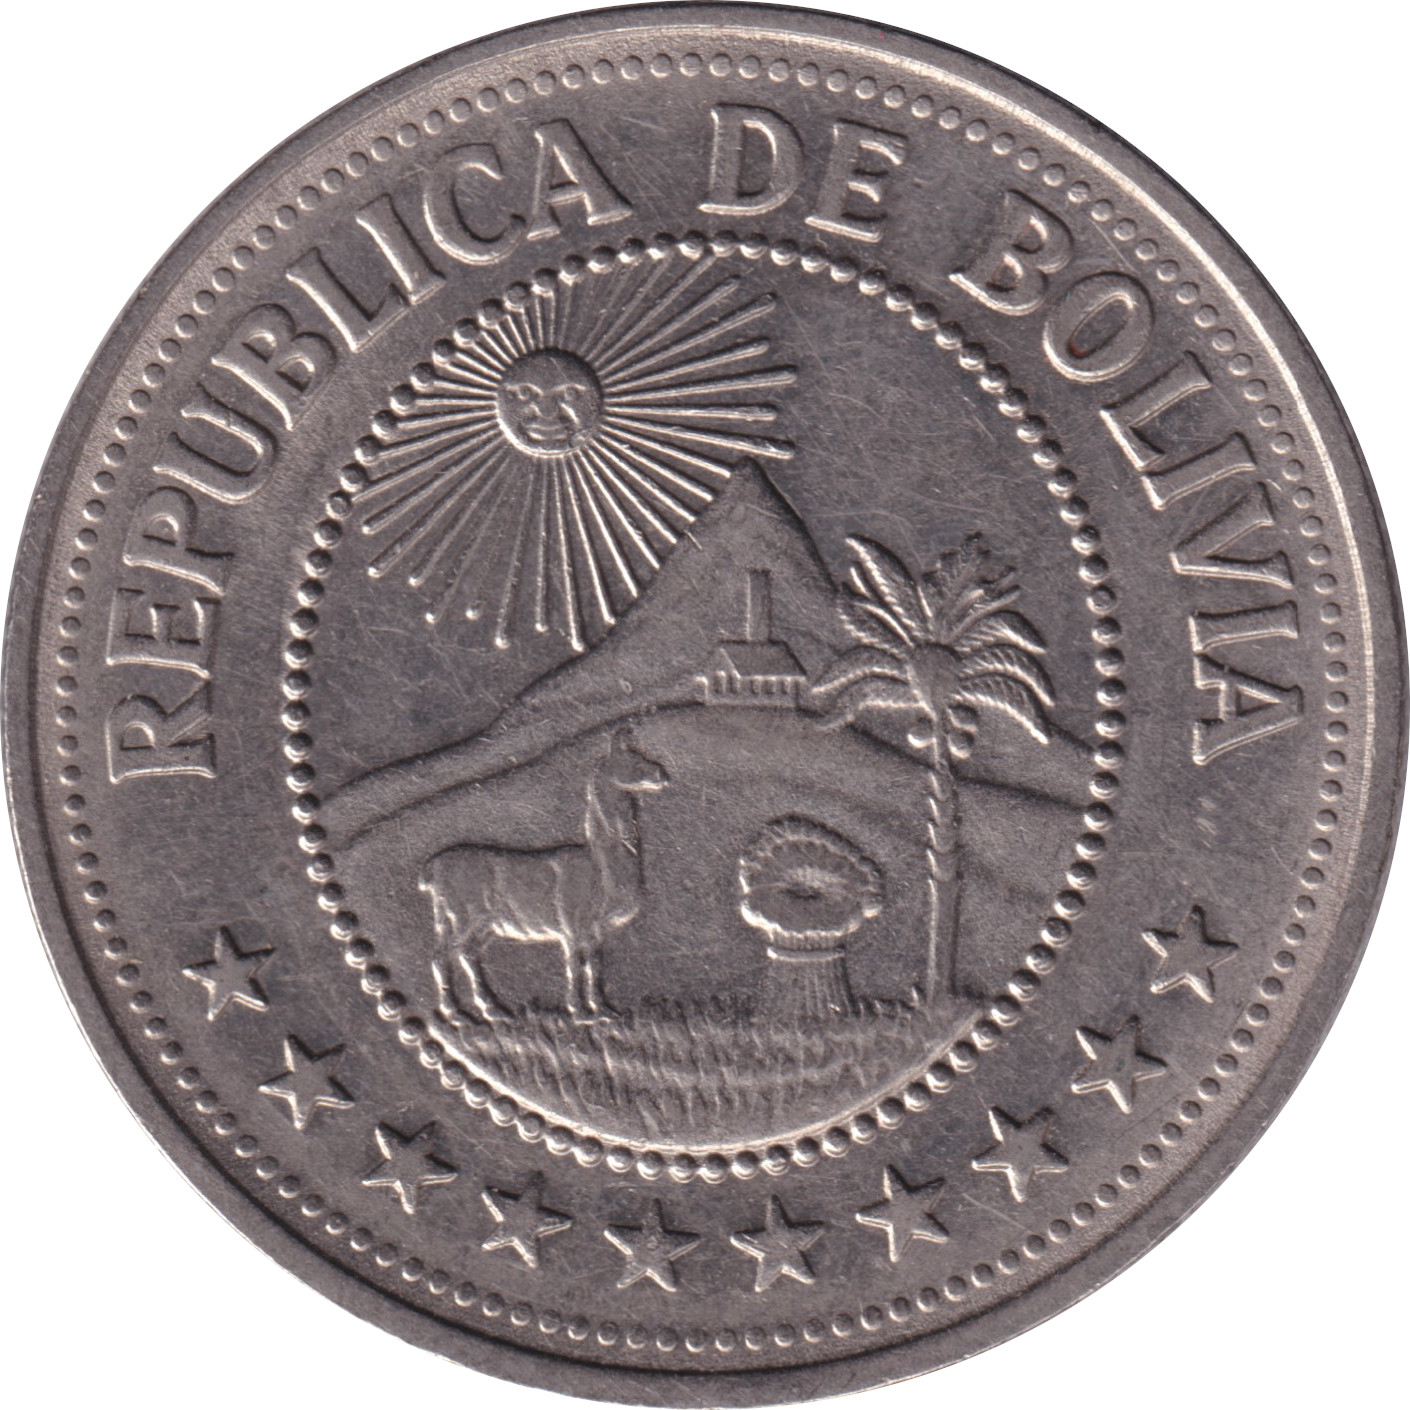 5 pesos - Armoiries